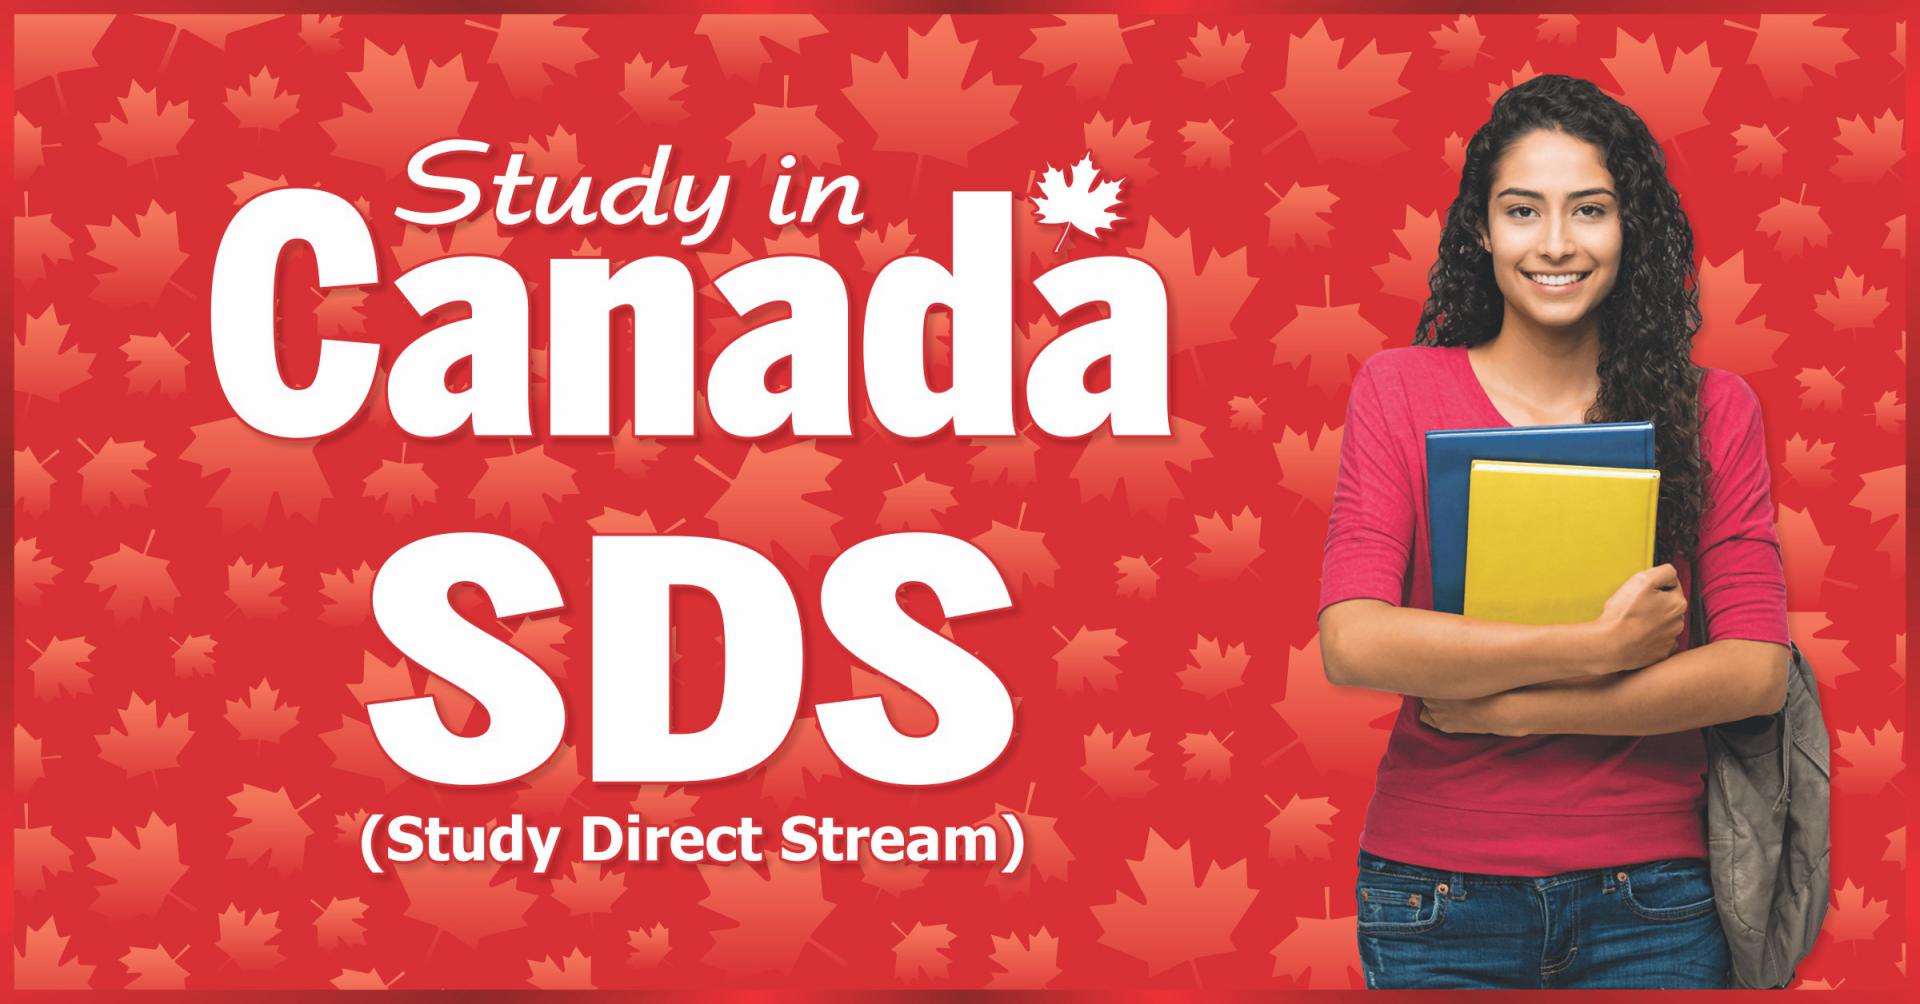 Du học Canada diện SDS mà không cần chứng minh tài chính